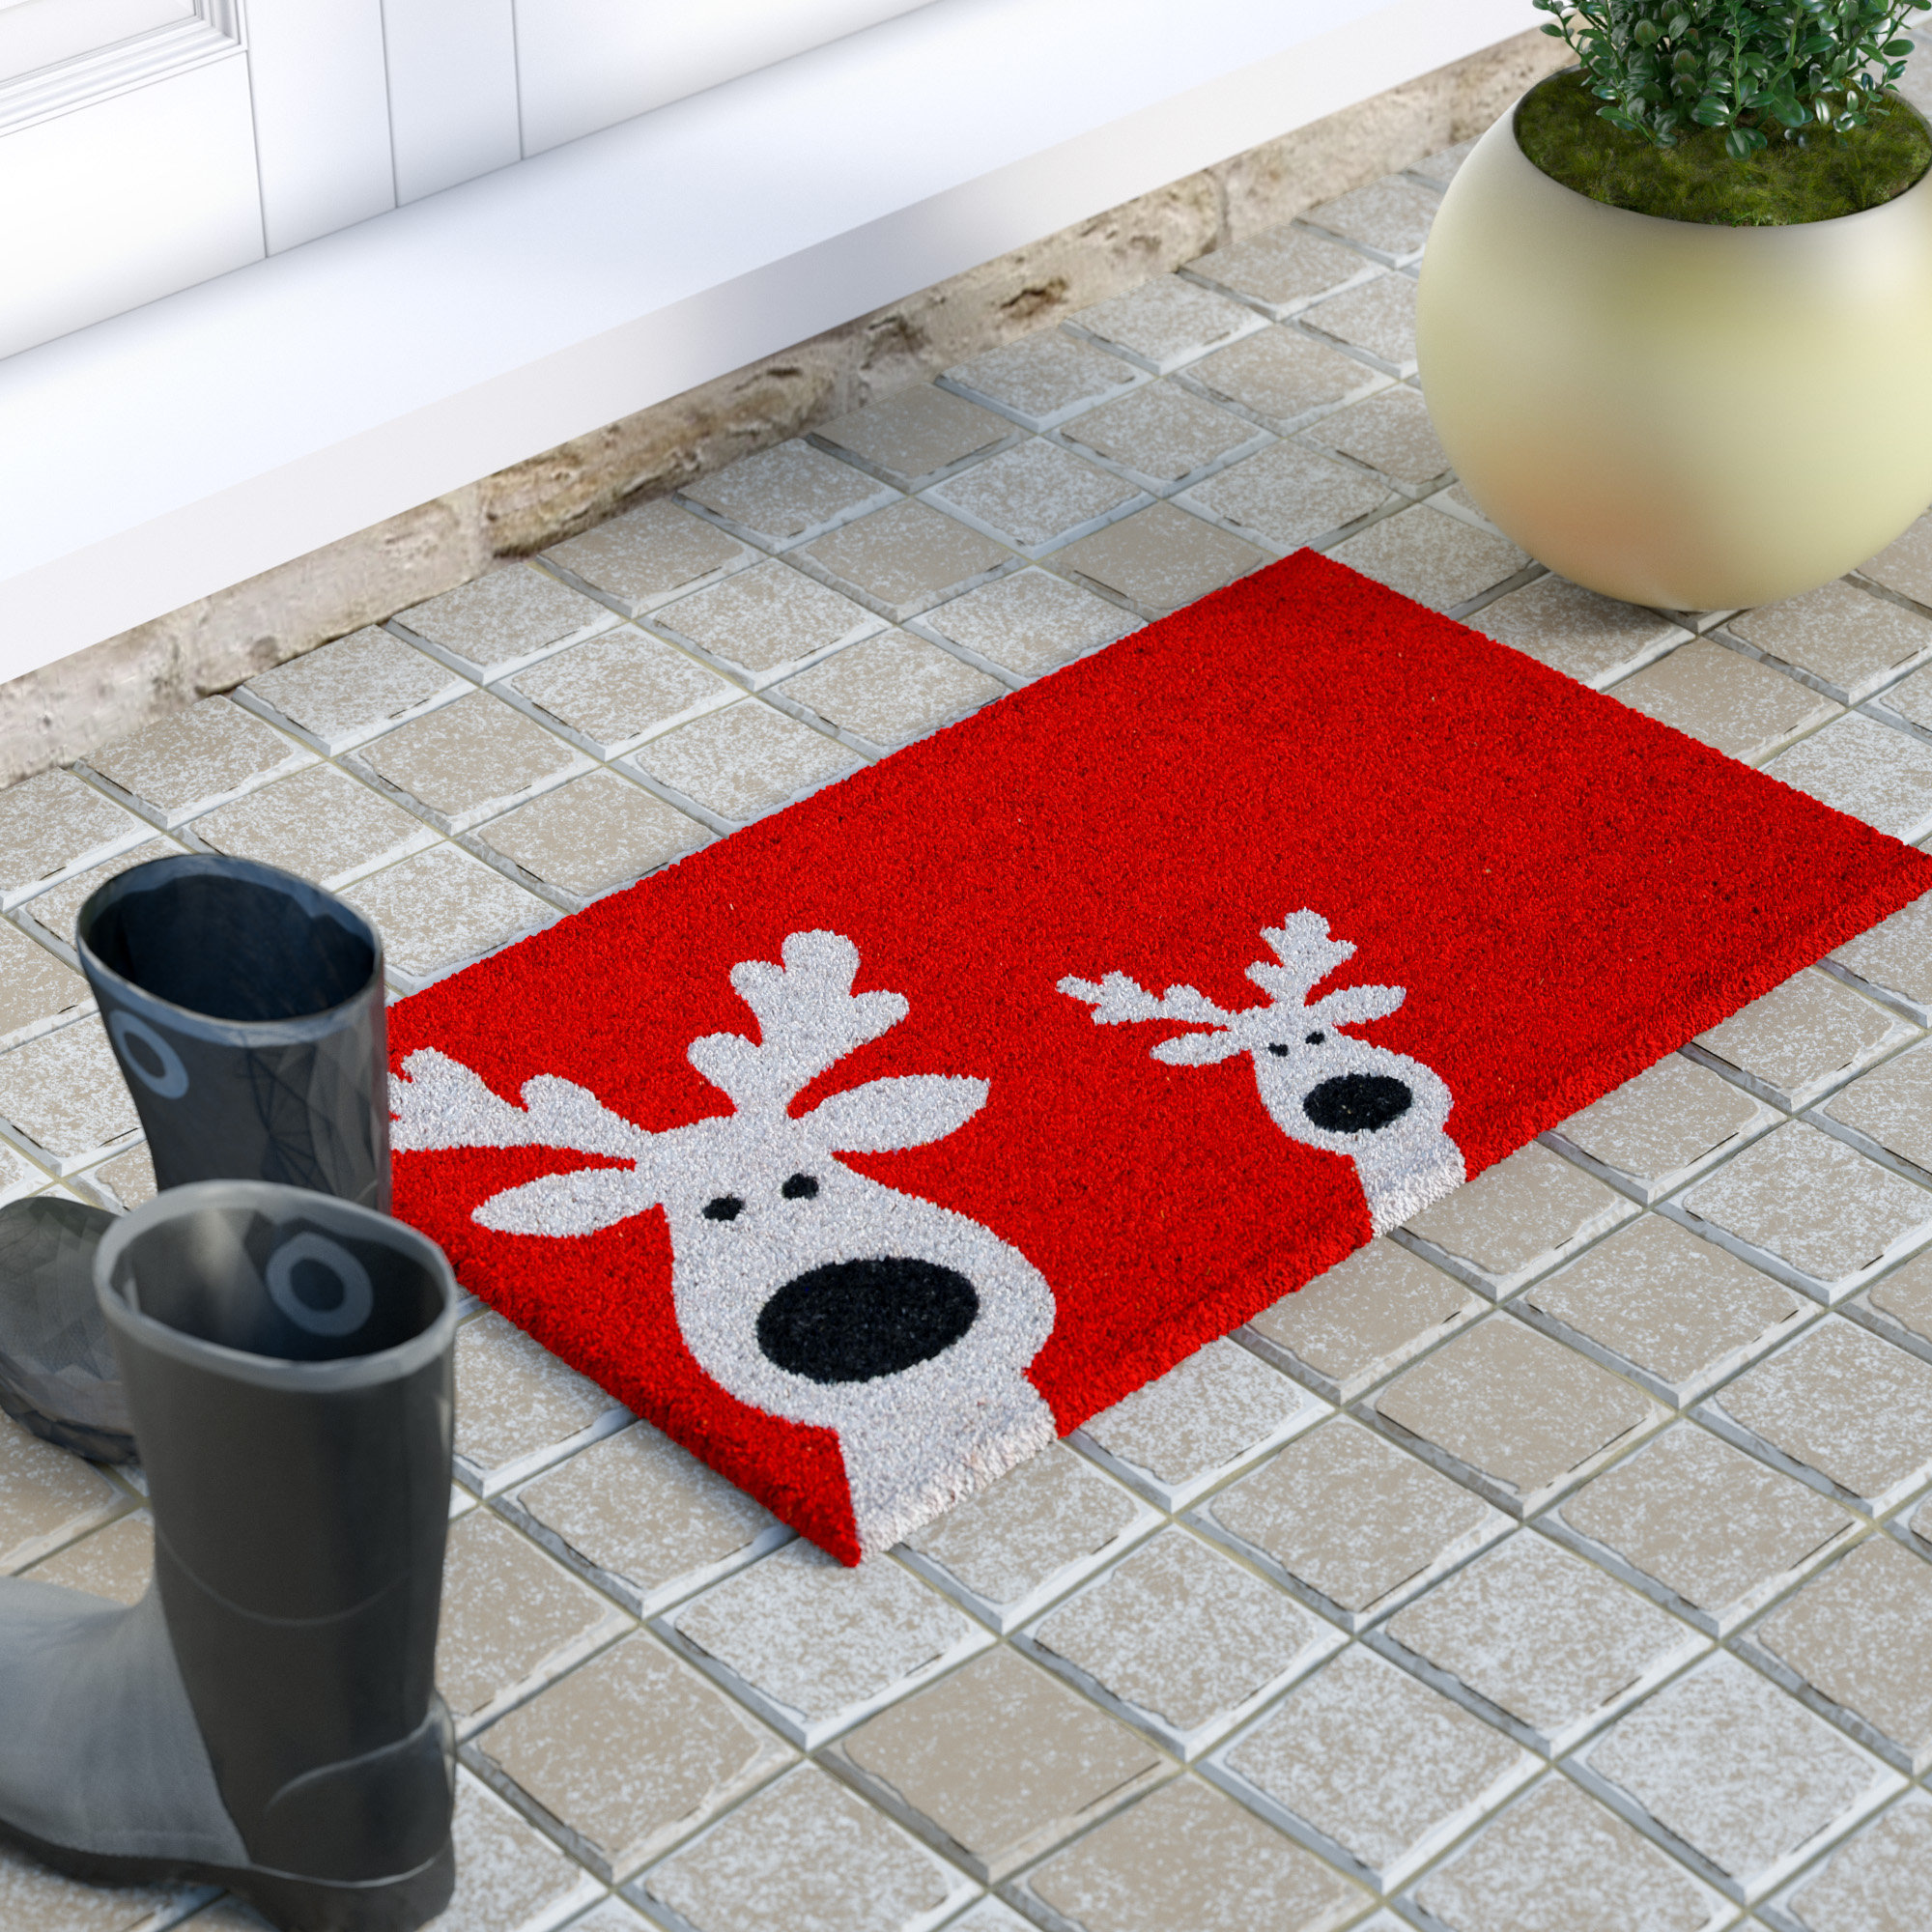 Let It Snow Christmas Doormat 29 x 17